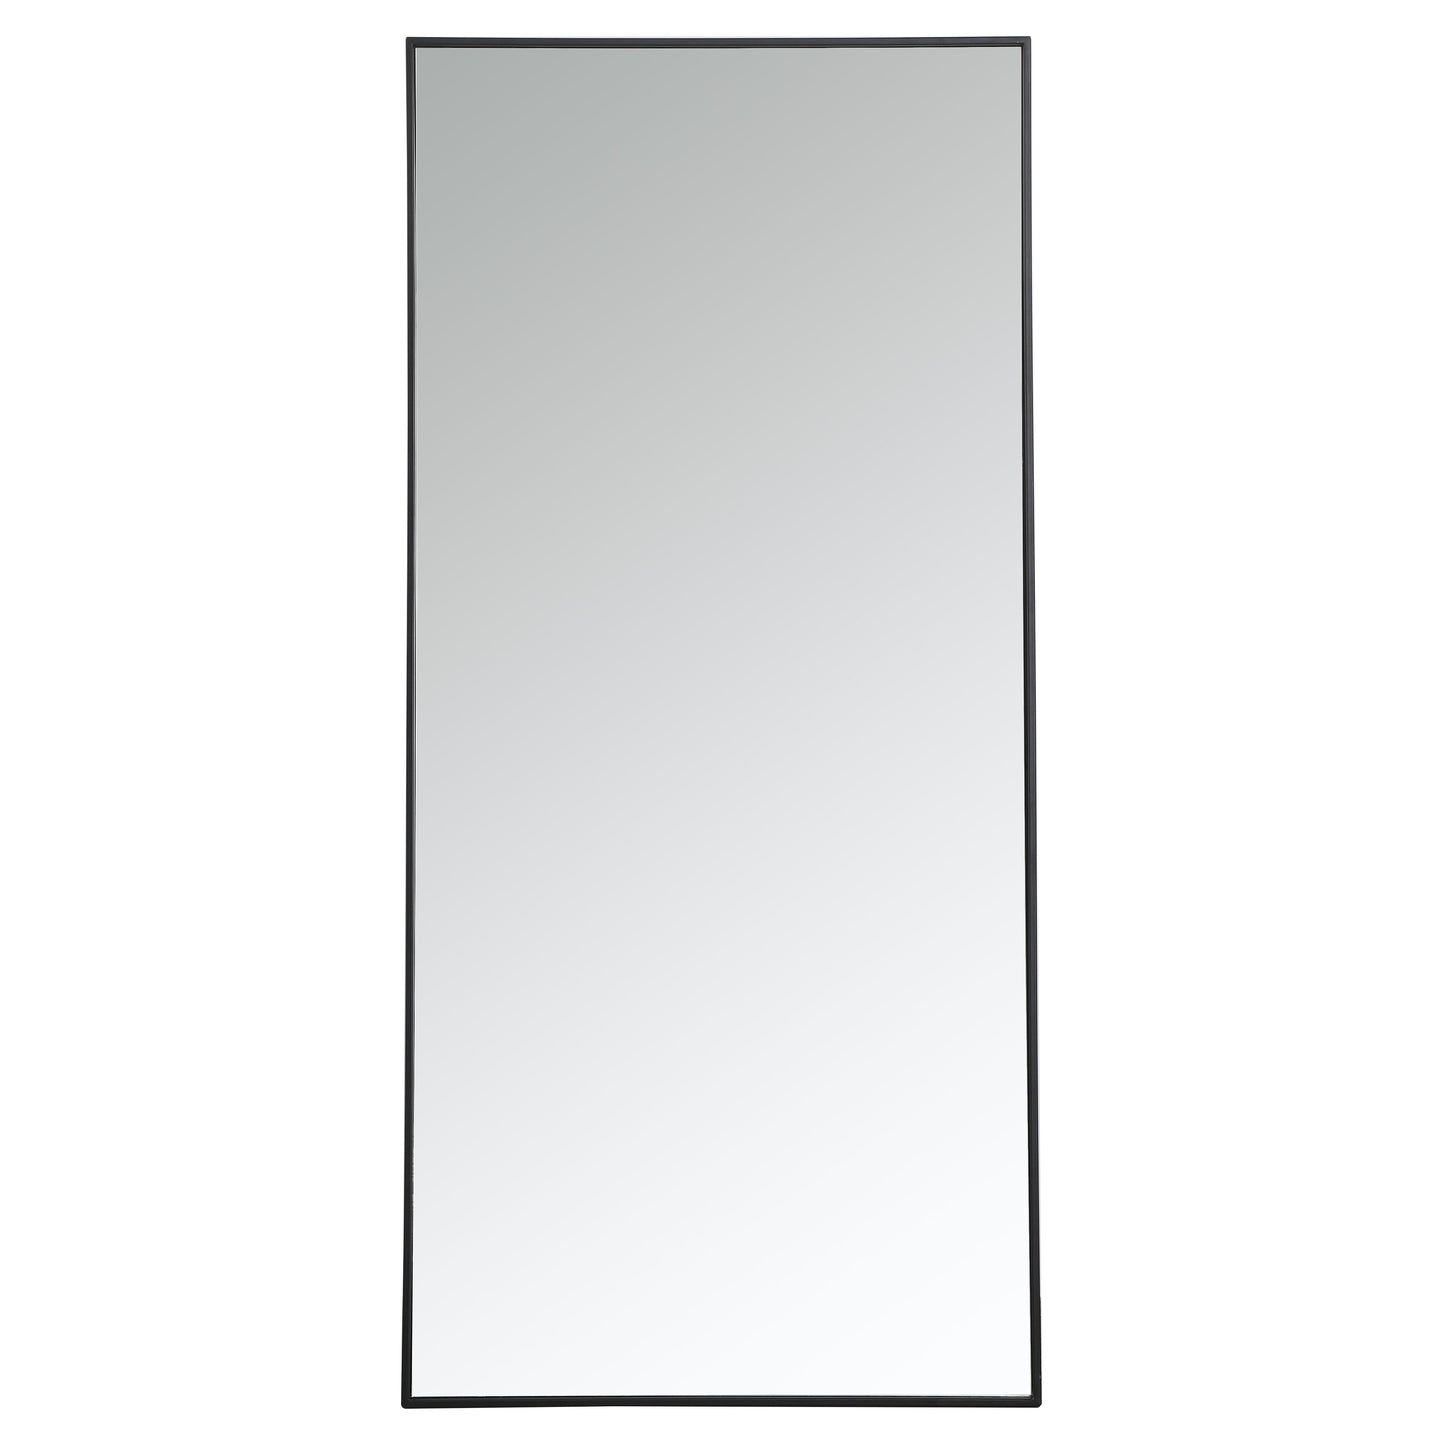 MR43060BK Monet 30" x 60" Metal Framed Rectangular Mirror in Black